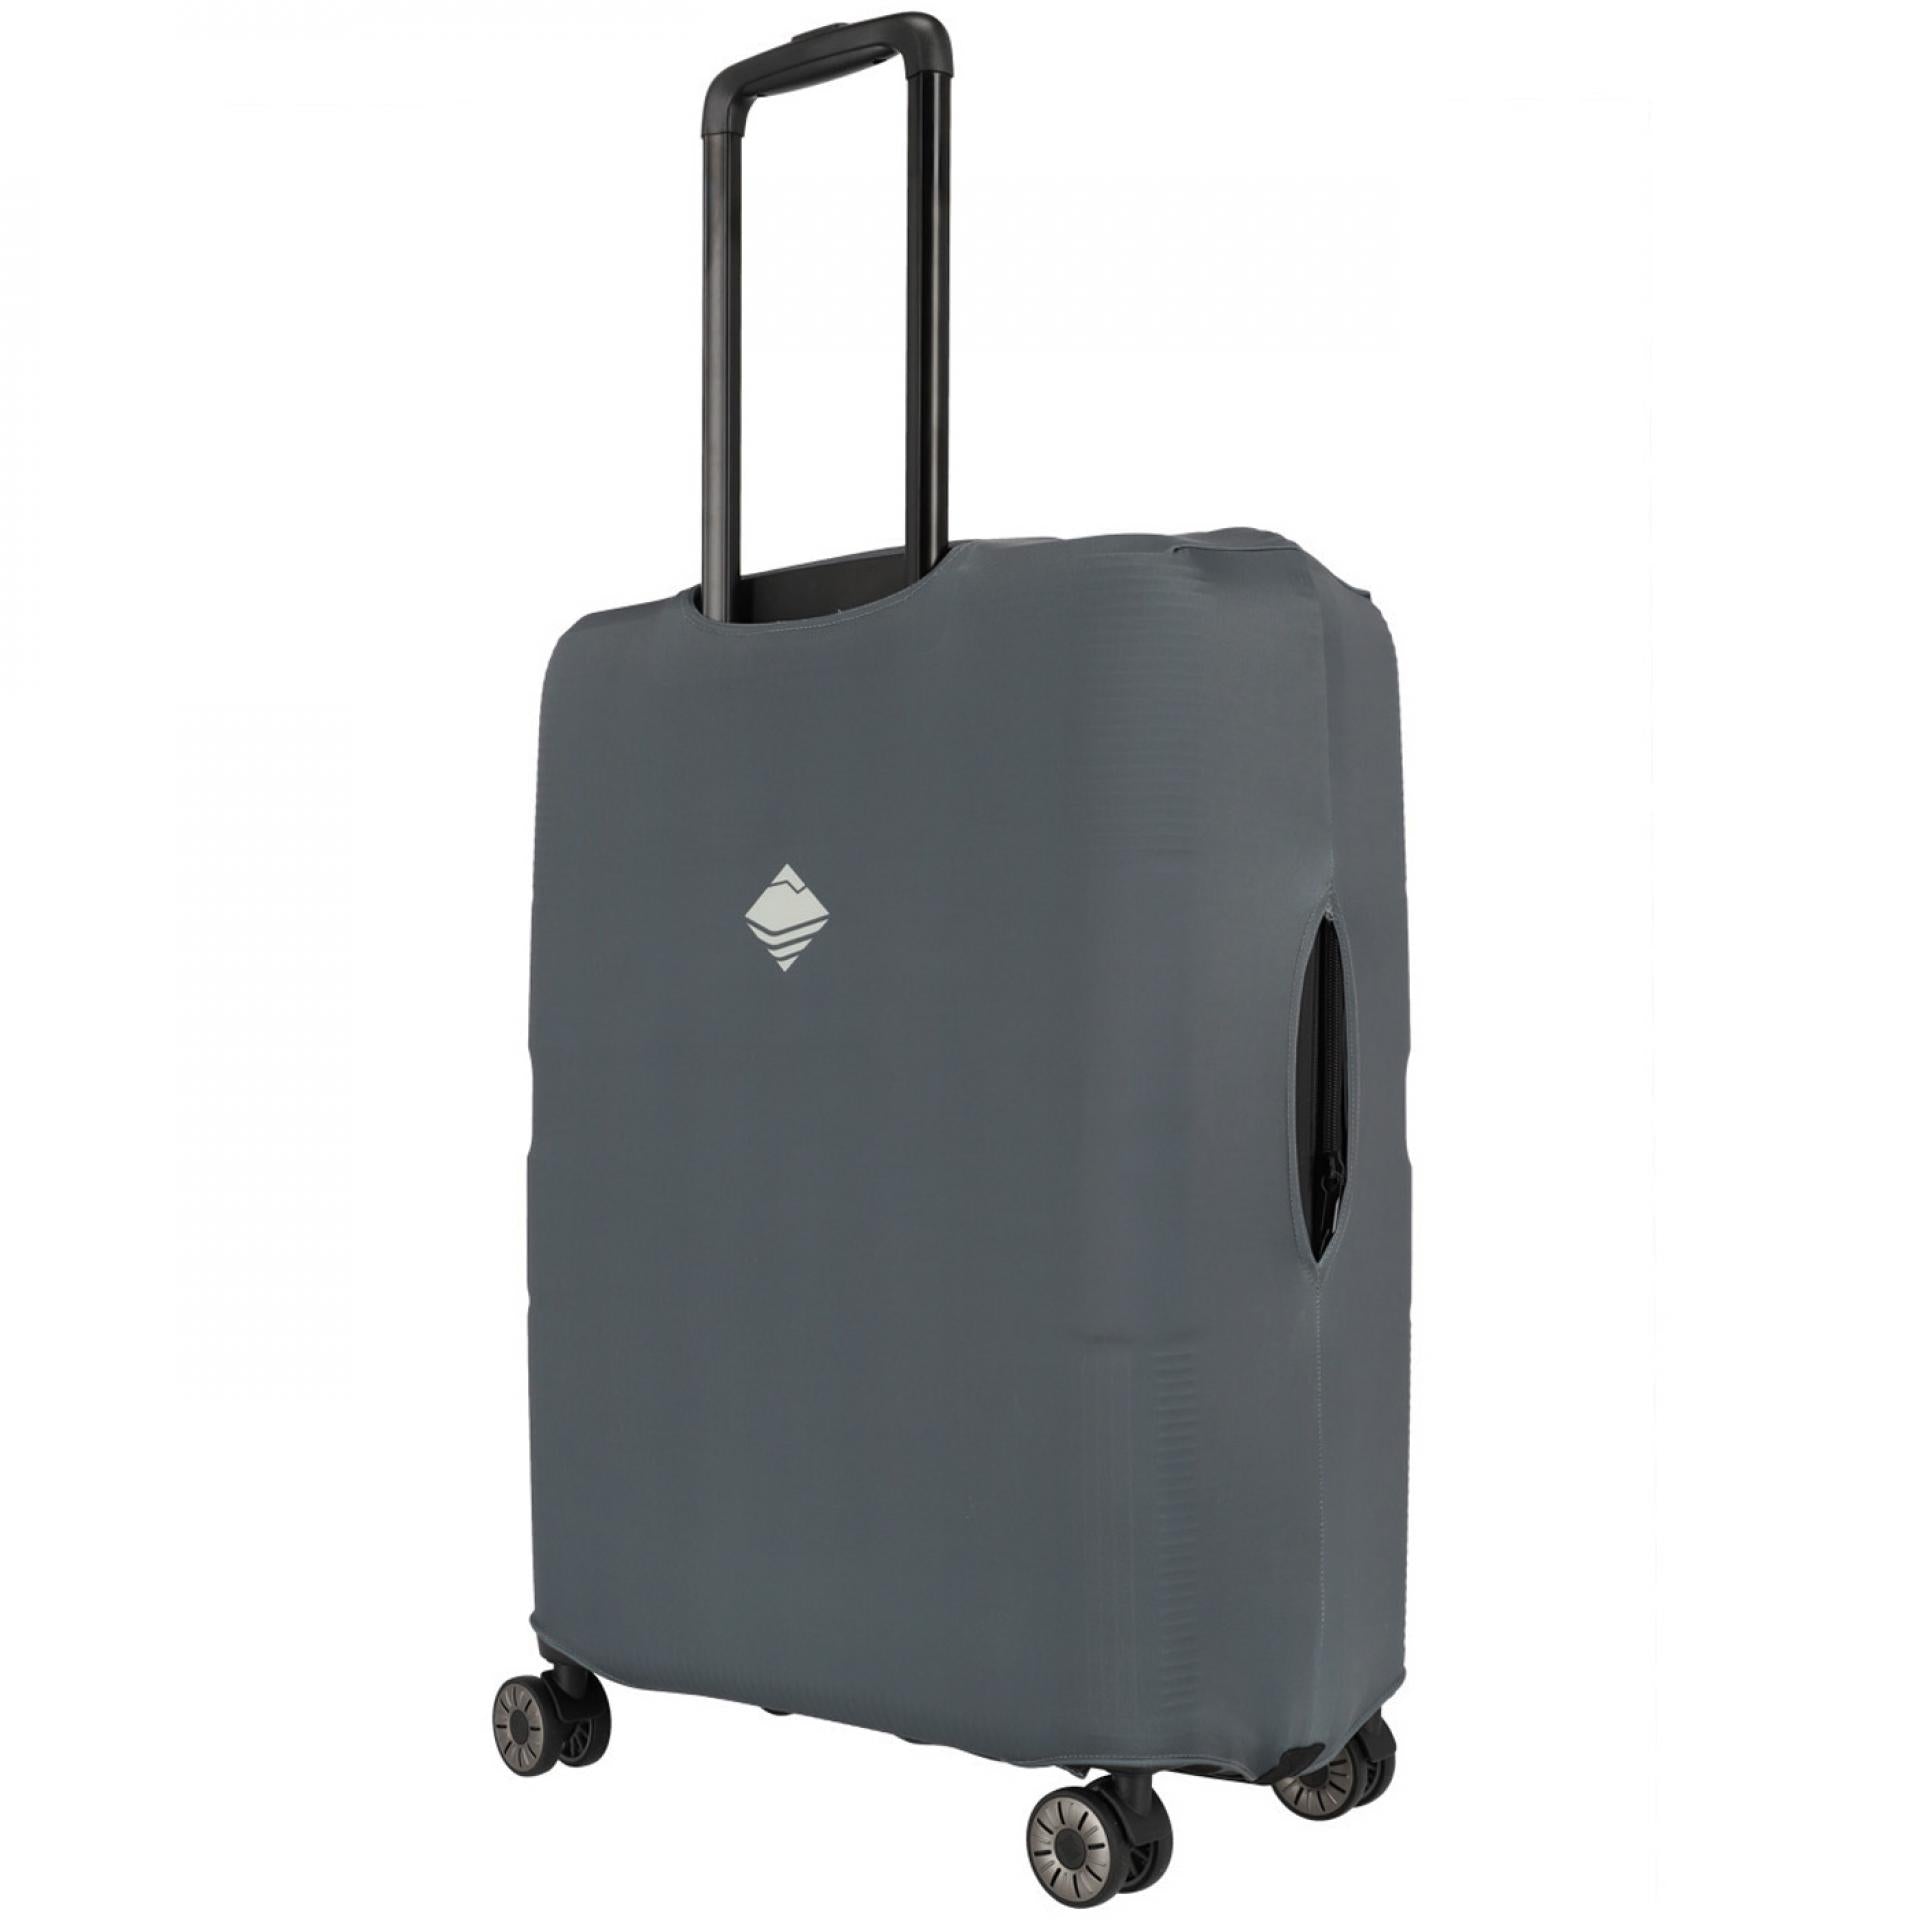 Travelite Kofferhülle Kofferschutz Kofferbezug - Größe: L - Farbe: Anthrazit